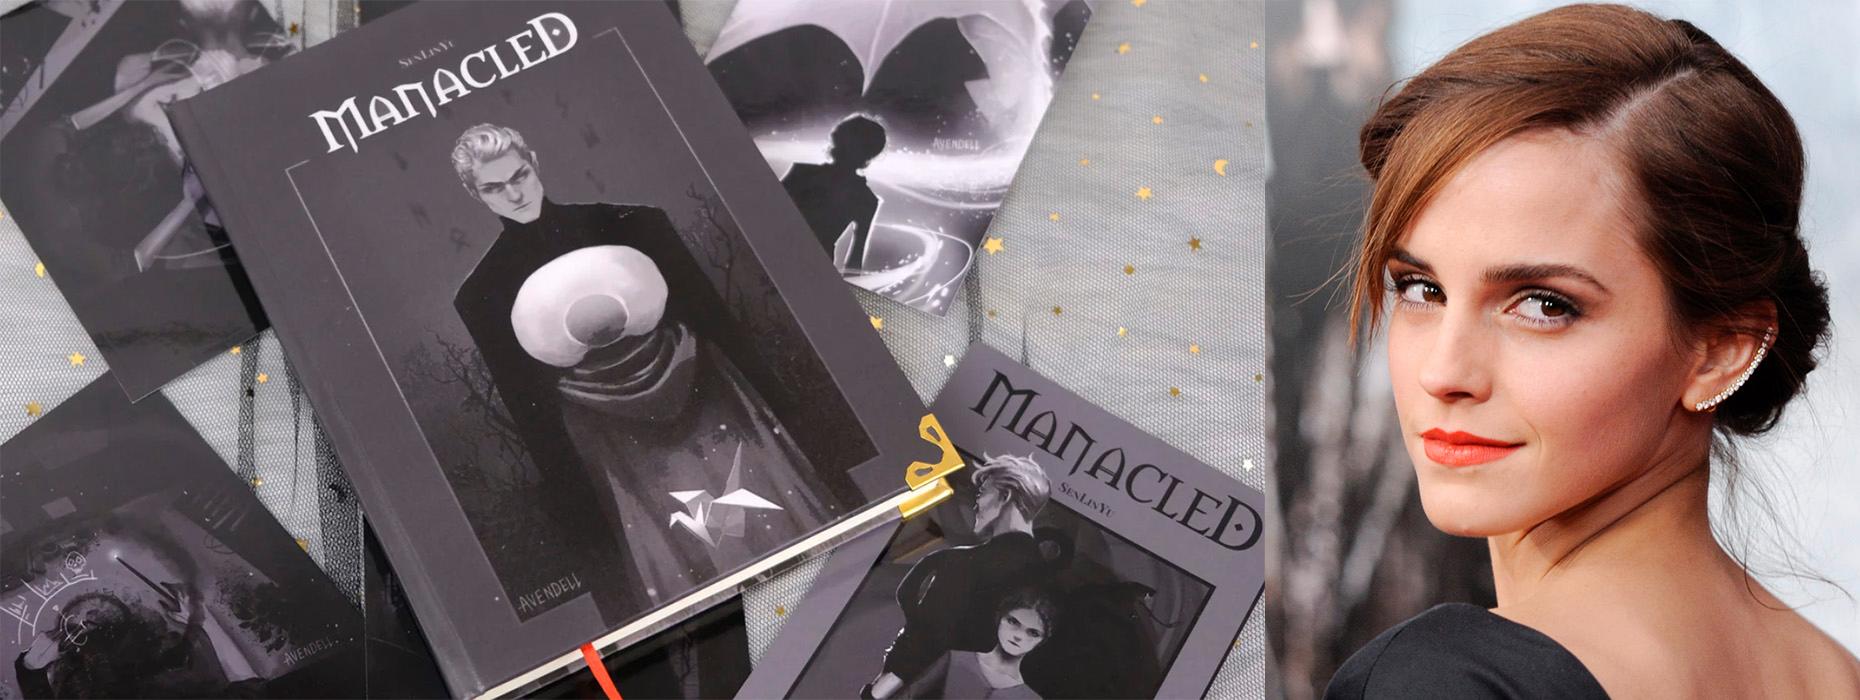 Fanfiktionserien ”Manacled”, som spinner vidare på J K Rowlings böcker, ger häxan Herminoe (spelad av Emma Watson i filmerna) upprättelse då ”seriens främsta kvinnliga identifikationsobjekt genomgående behandlas illa av seriens hjälte och hans killbästis”, skriver Malin Nauwerck. 